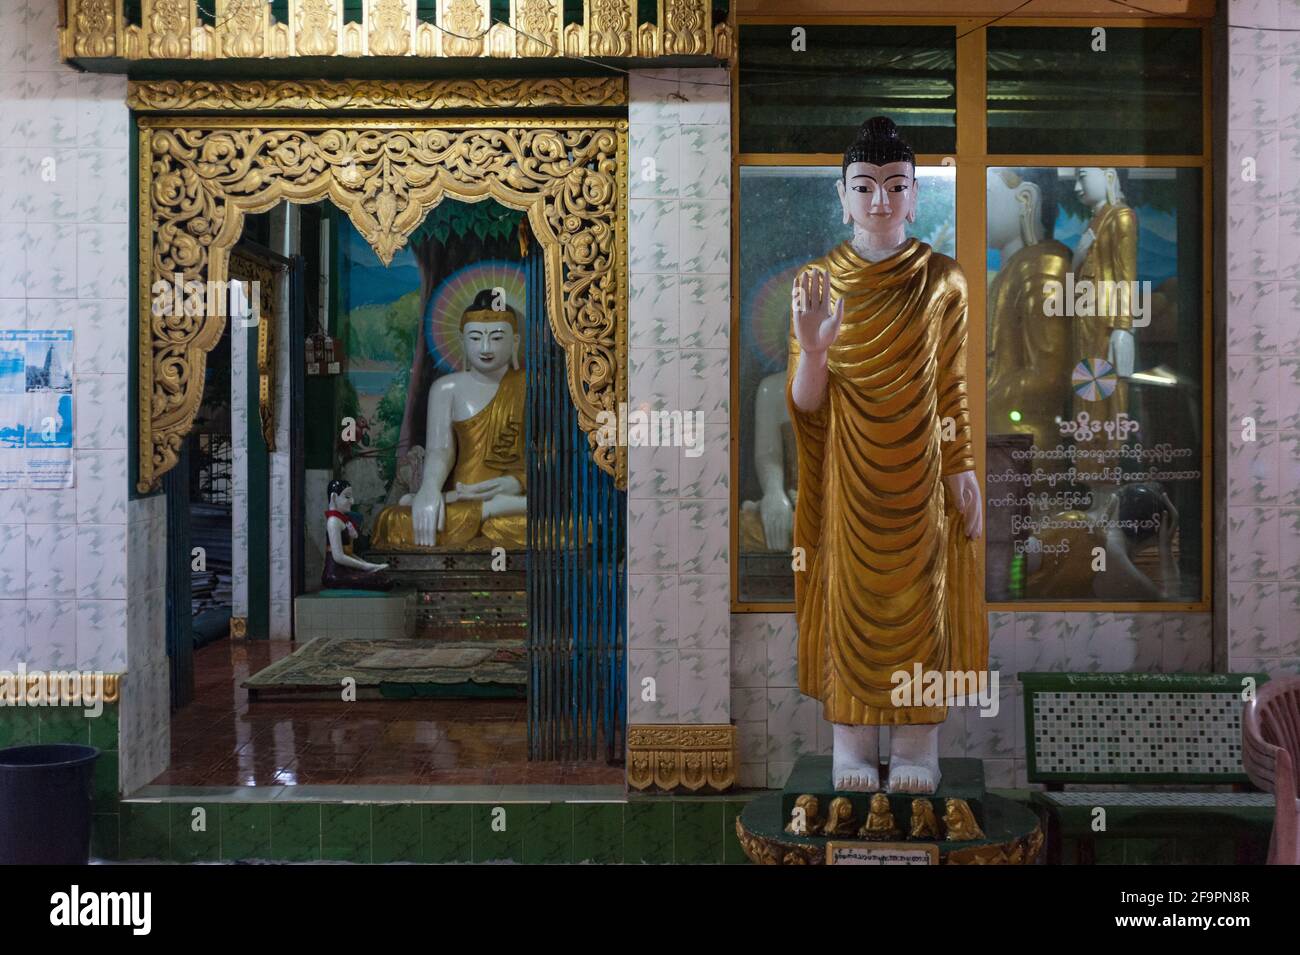 30.01.2017, Mawlamyine, Mon State, Myanmar - Buddha-Figuren in der Kyaikthanlan-Pagode, der höchsten buddhistischen Pagode der Stadt. 0SL170130D050CAROEX.JPG [ Stockfoto